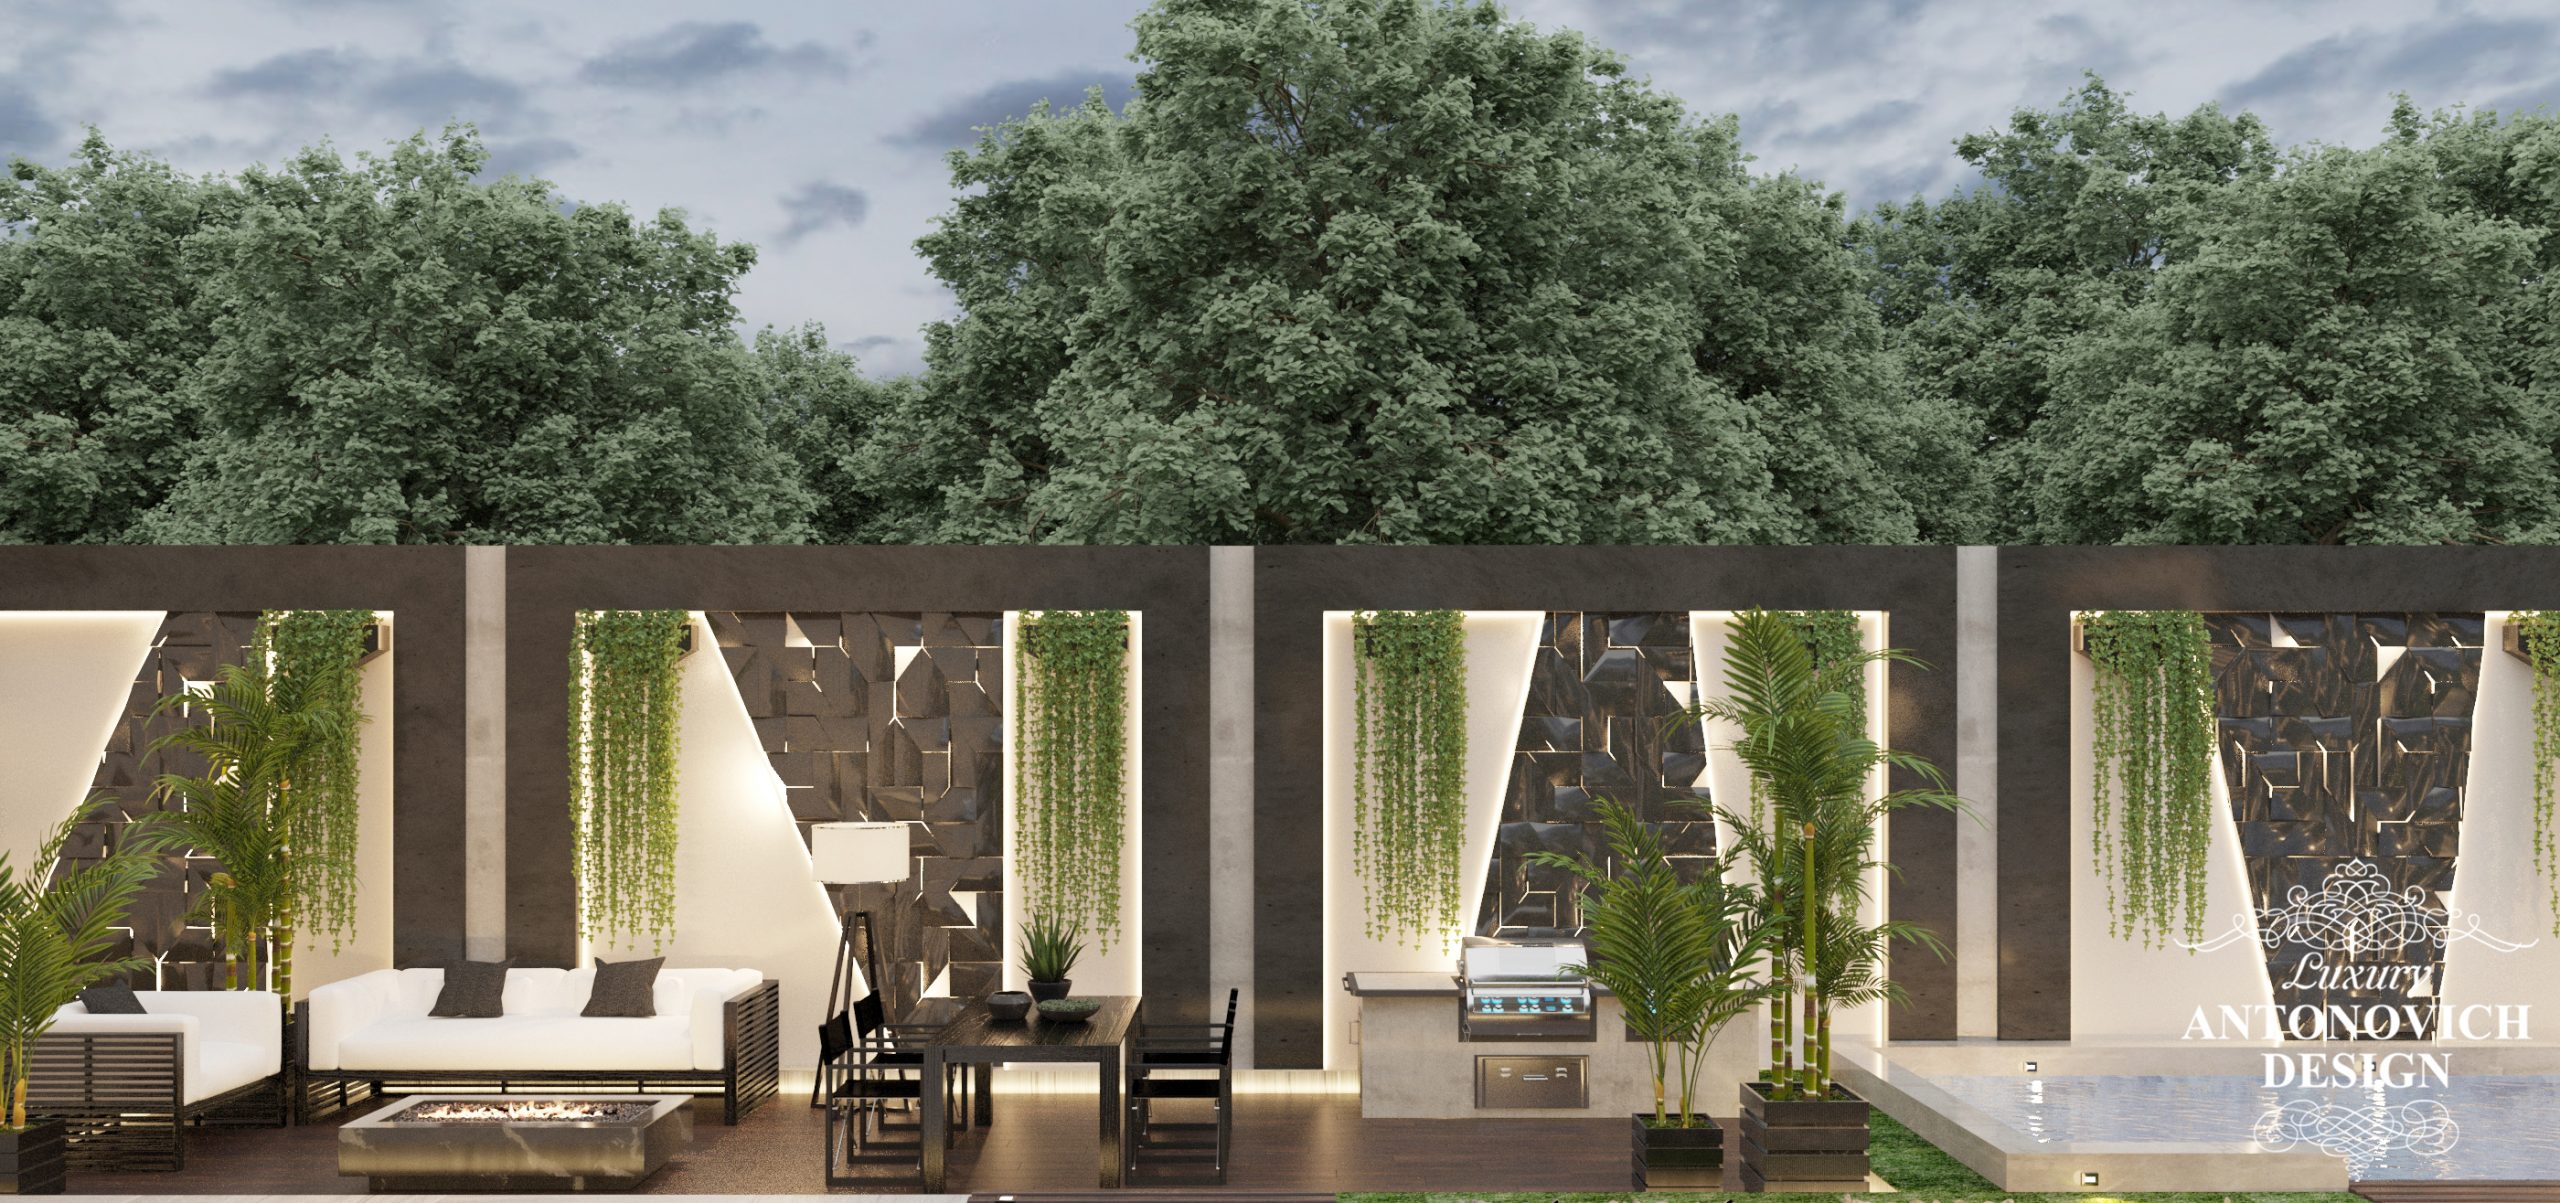 Авторский дизайнерский проект экстерьера дома с использованием 3D панелей в дизайне настенного покрытия